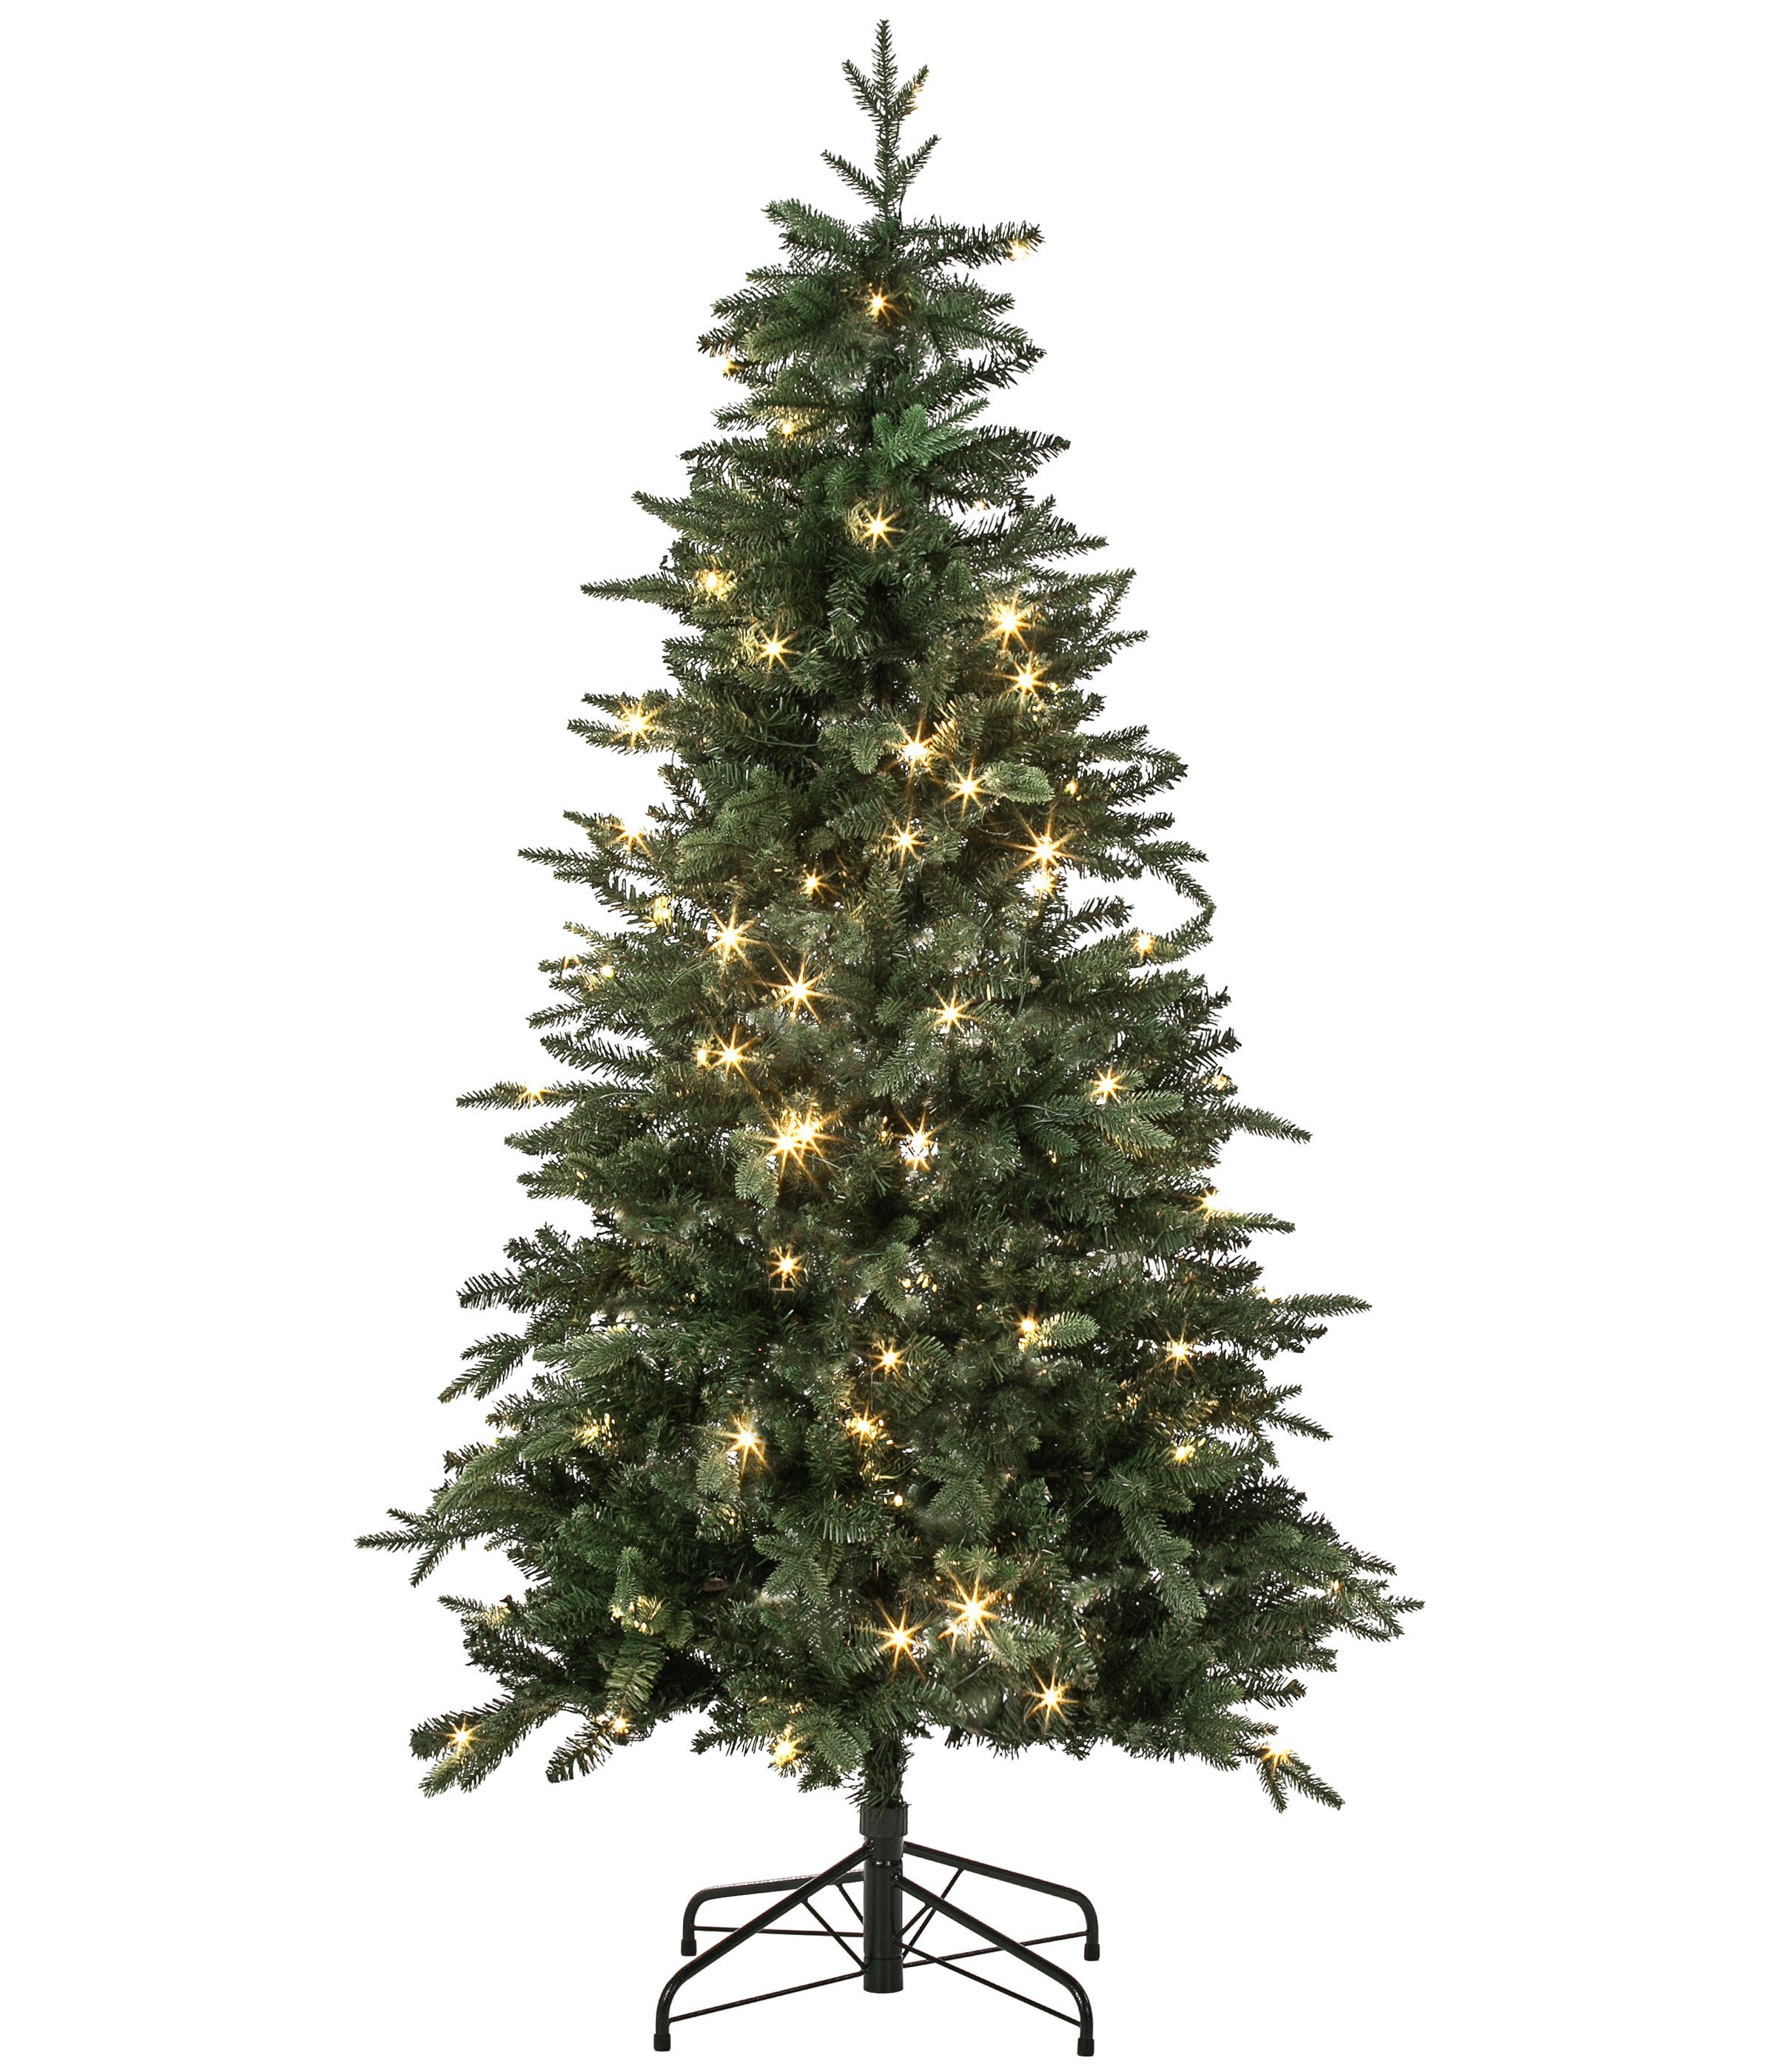 Dehner Künstlicher Weihnachtsbaum Tanne Espen mit LED/Ständer, 180 cm, Ø 101.6 cm, hochwertiger künstlicher Christbaum mit LED Beleuchtung | Künstliche Weihnachtsbäume